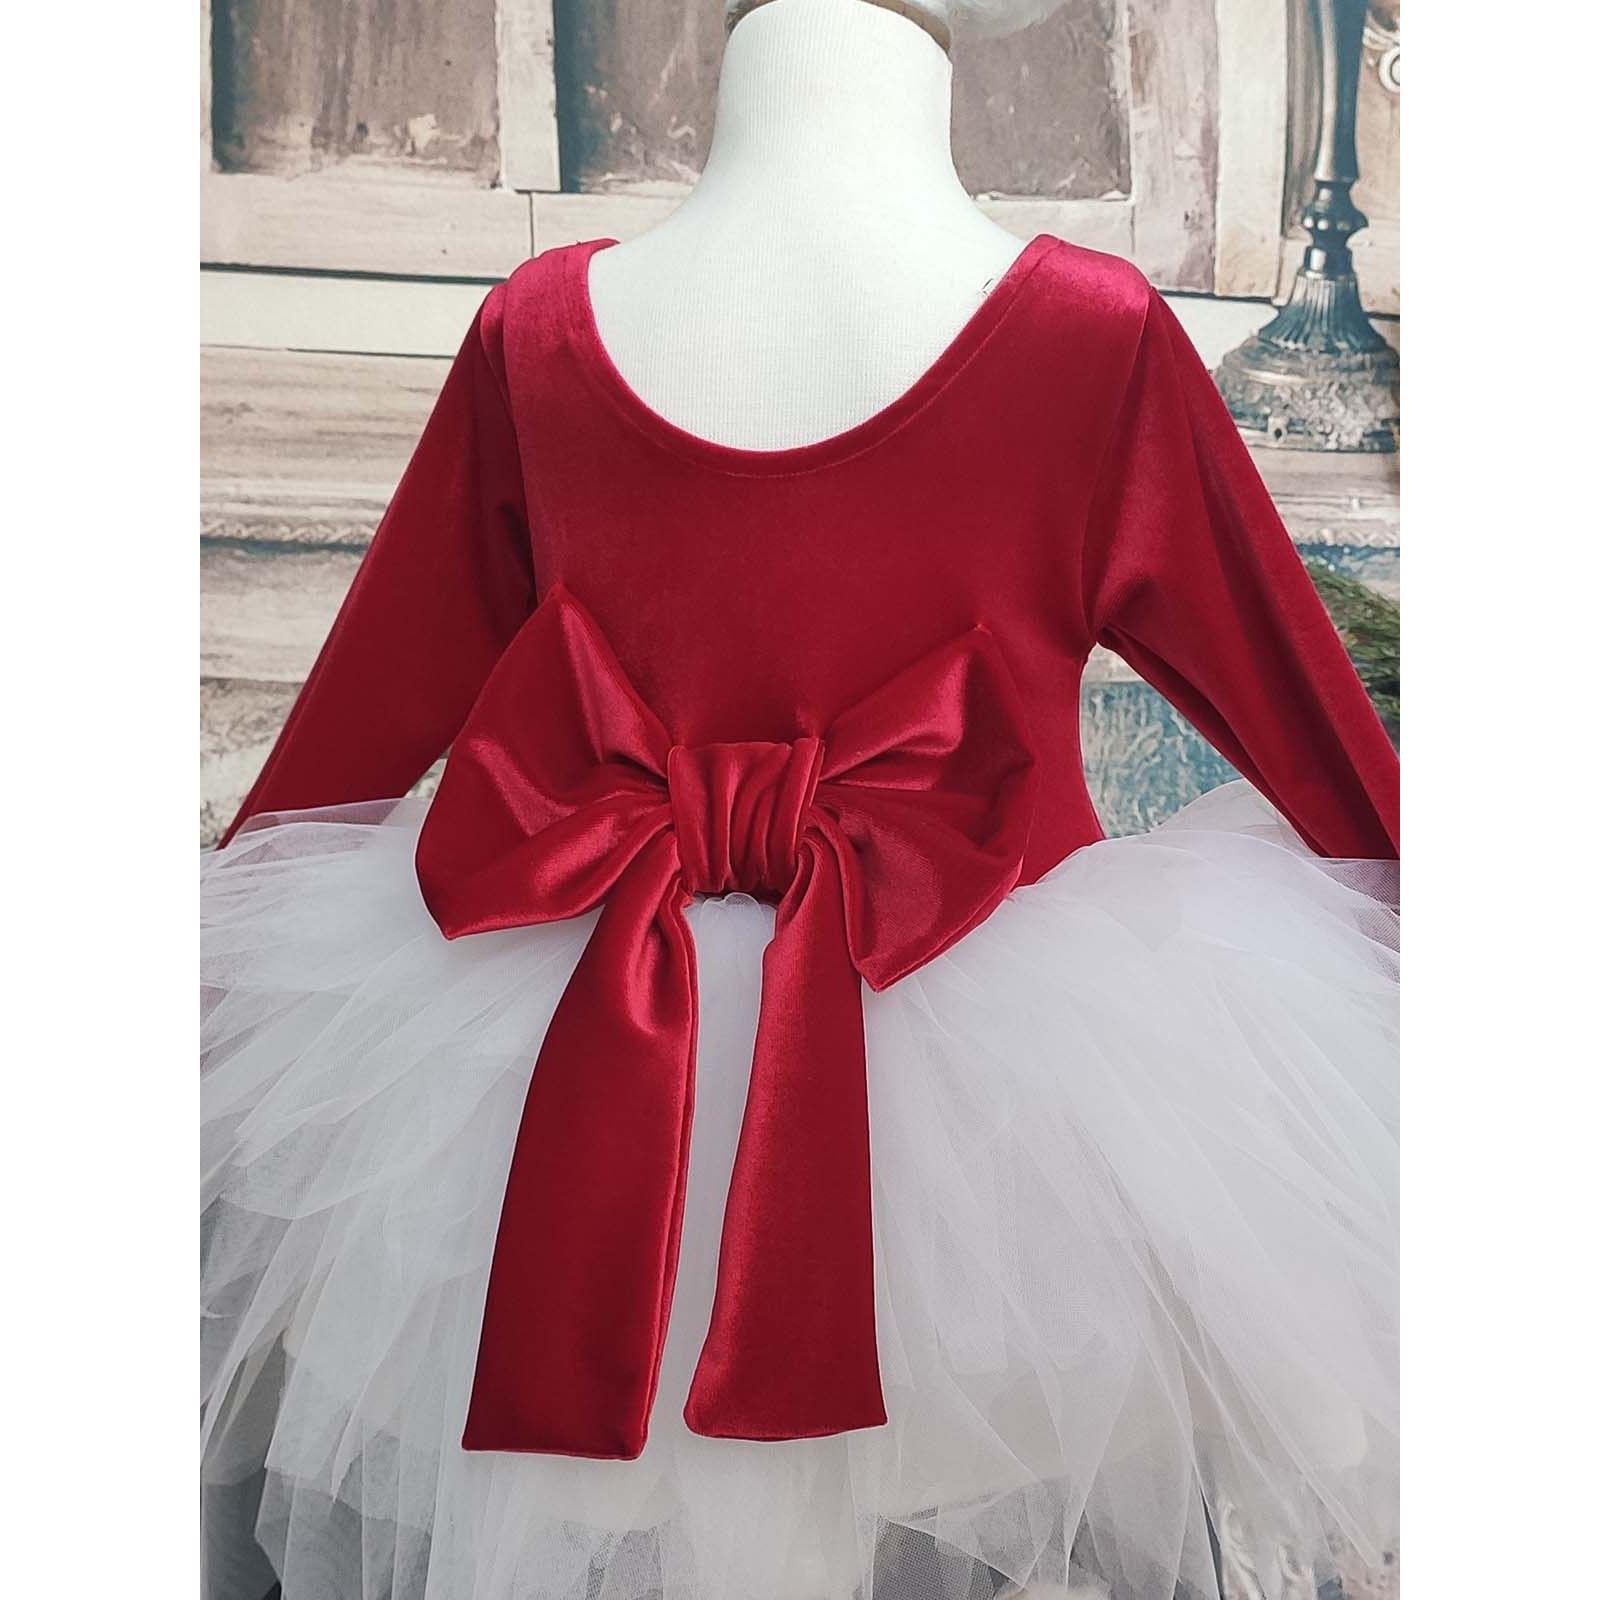 Shecco Babba Kız Çocuk Kadife Tüllü Elbise, Uzun Kollu Bandana 6-10 Yaş Abiye Kırmızı-Beyaz